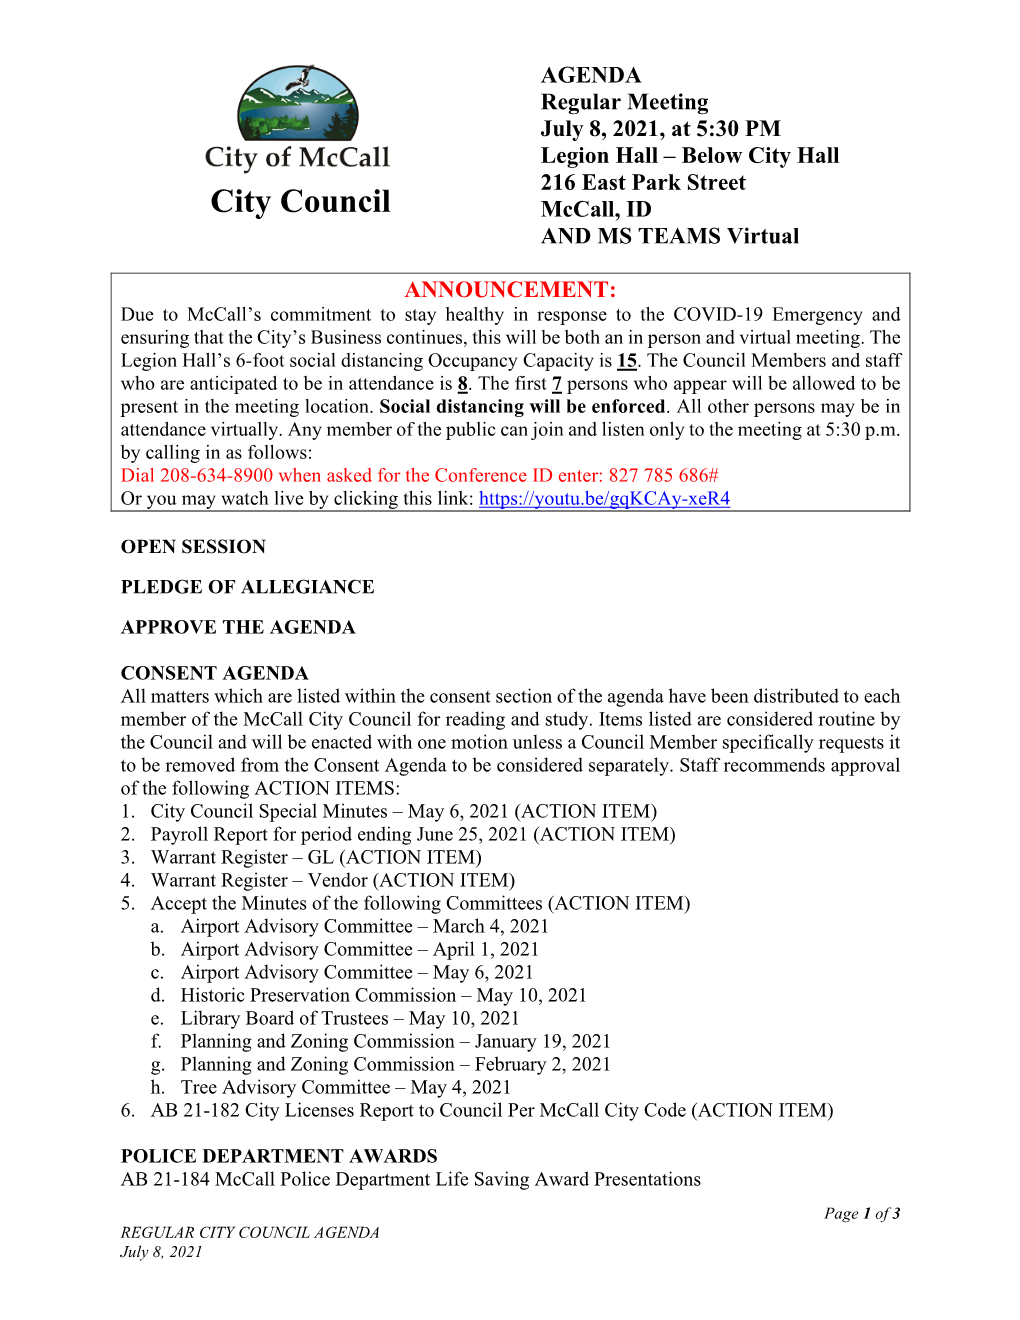 2021.07.08 Regular Council Meeting Packet W Agenda